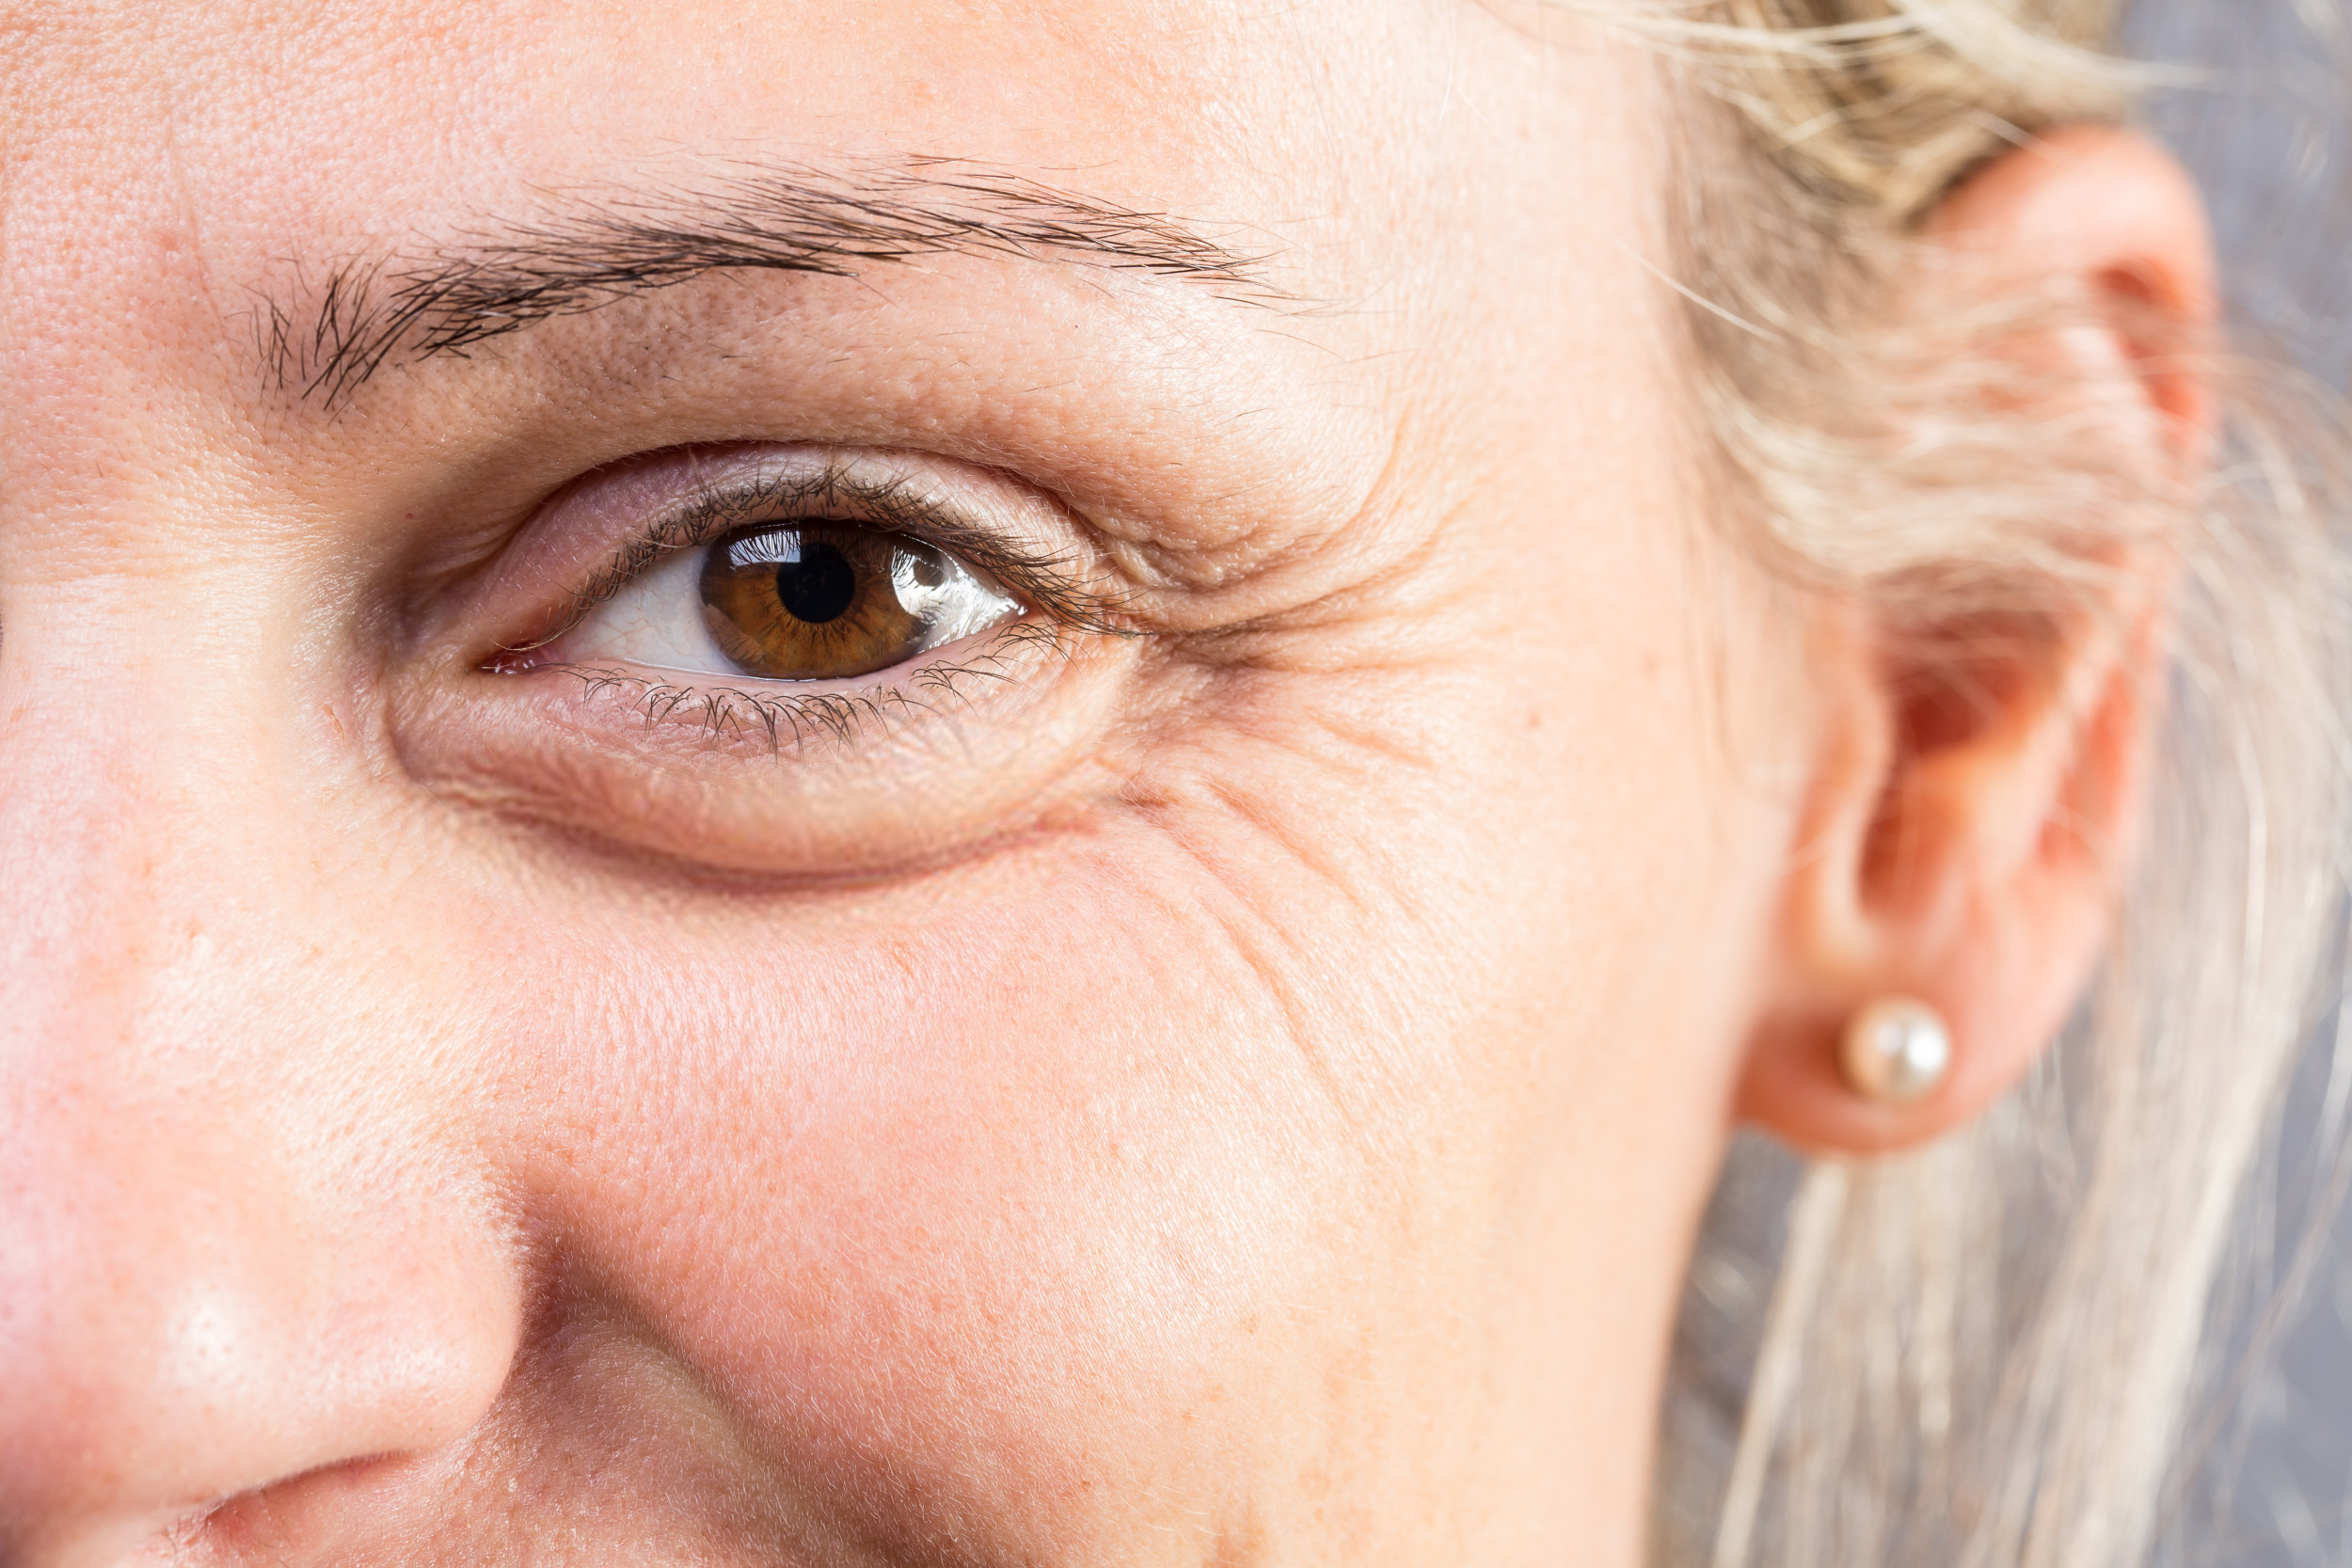 Le changement oculaire révèle si quelqu’un est concentré, disent les scientifiques